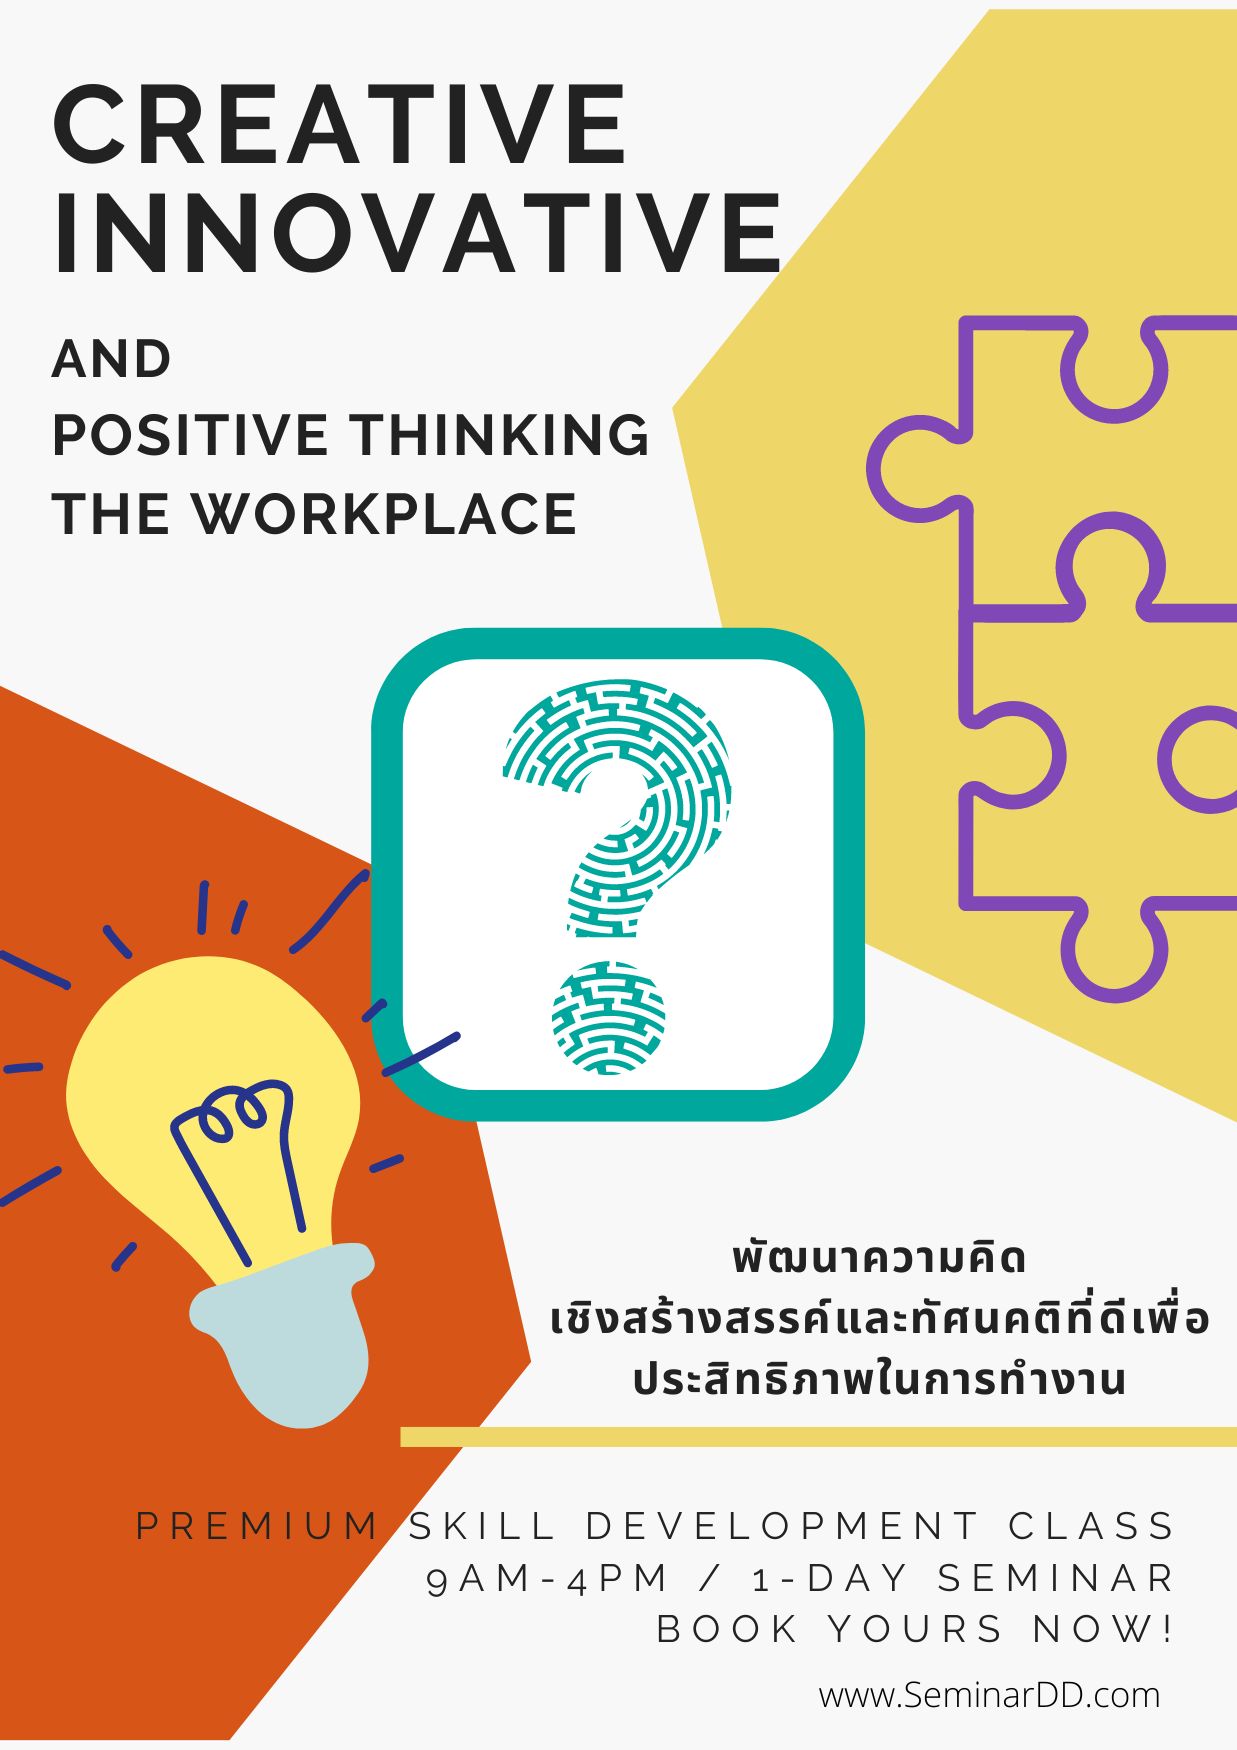 หลักสูตร พัฒนาความคิดเชิงสร้างสรรค์ และทัศนคติที่ดีเพื่อประสิทธิภาพการทำงาน ( Creative Innovative and Positive Thinking in the Workplace )